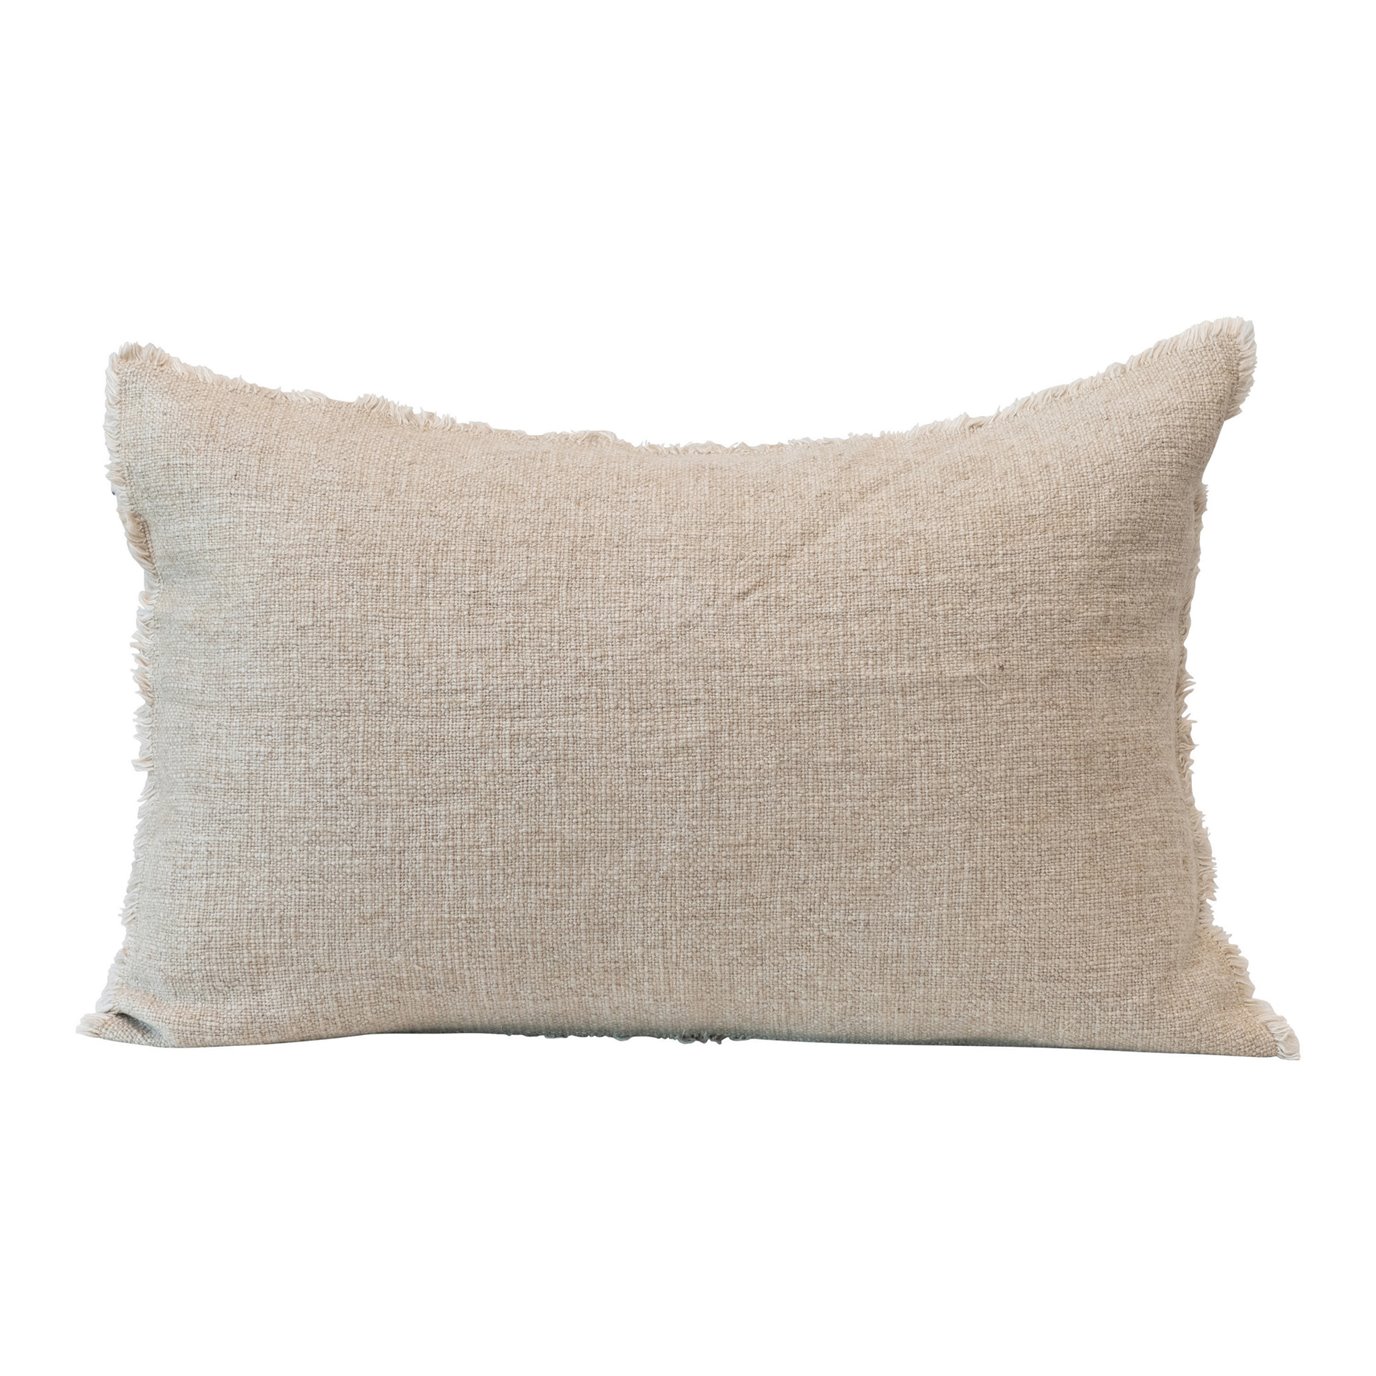 Linen Blend Lumbar Pillow with Frayed Edges, Natural